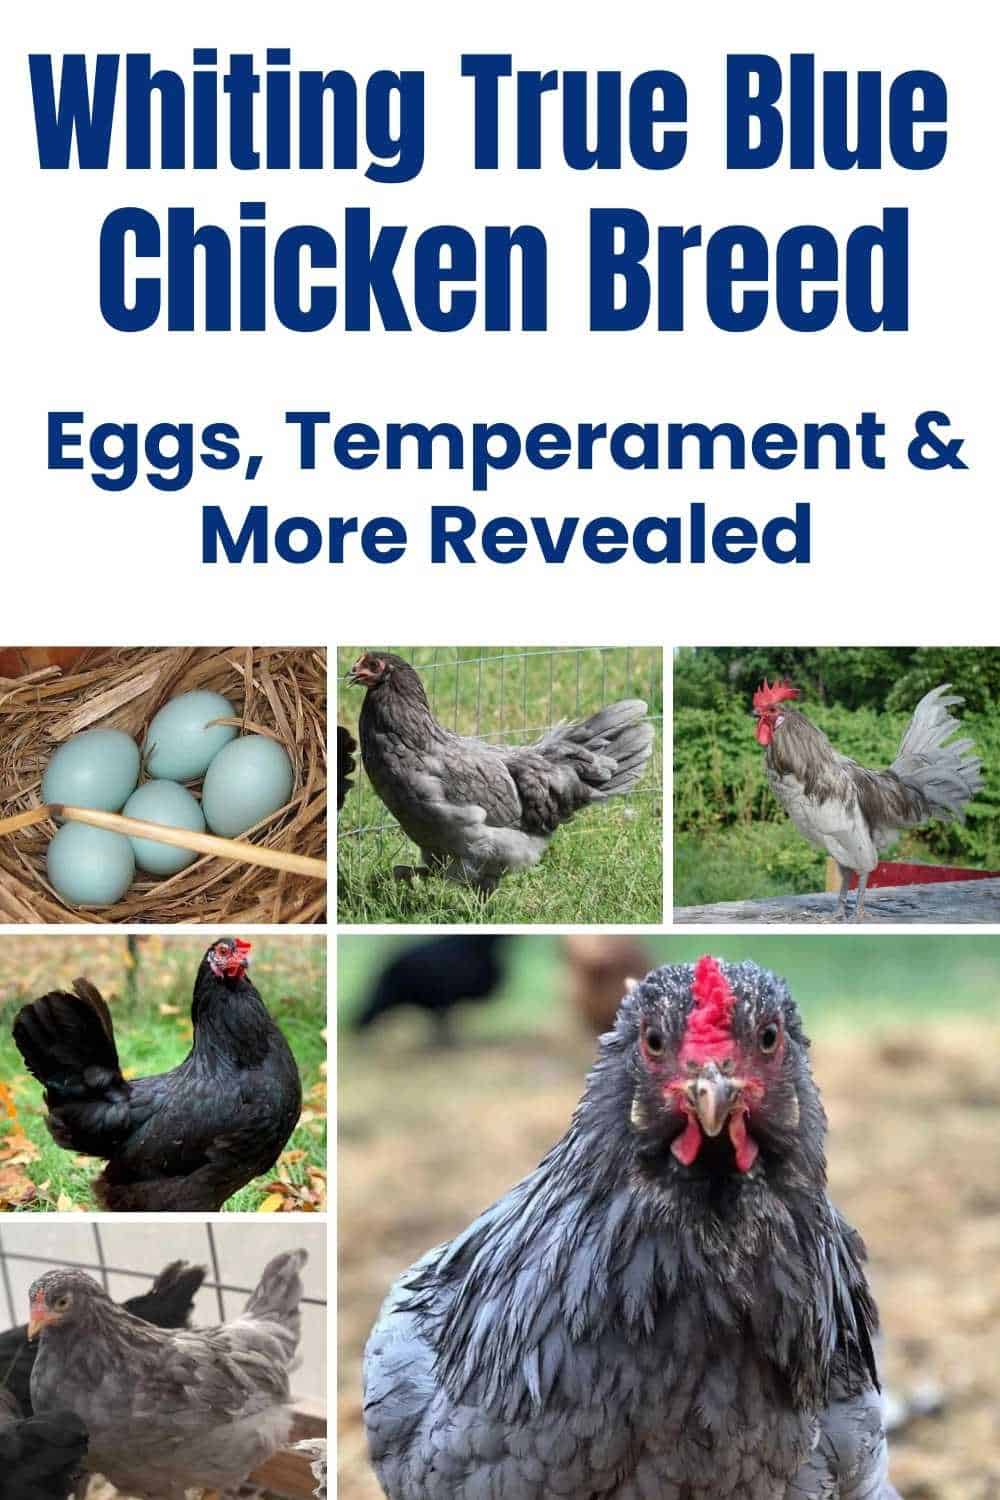 Whiting True Blue Chicken breeds